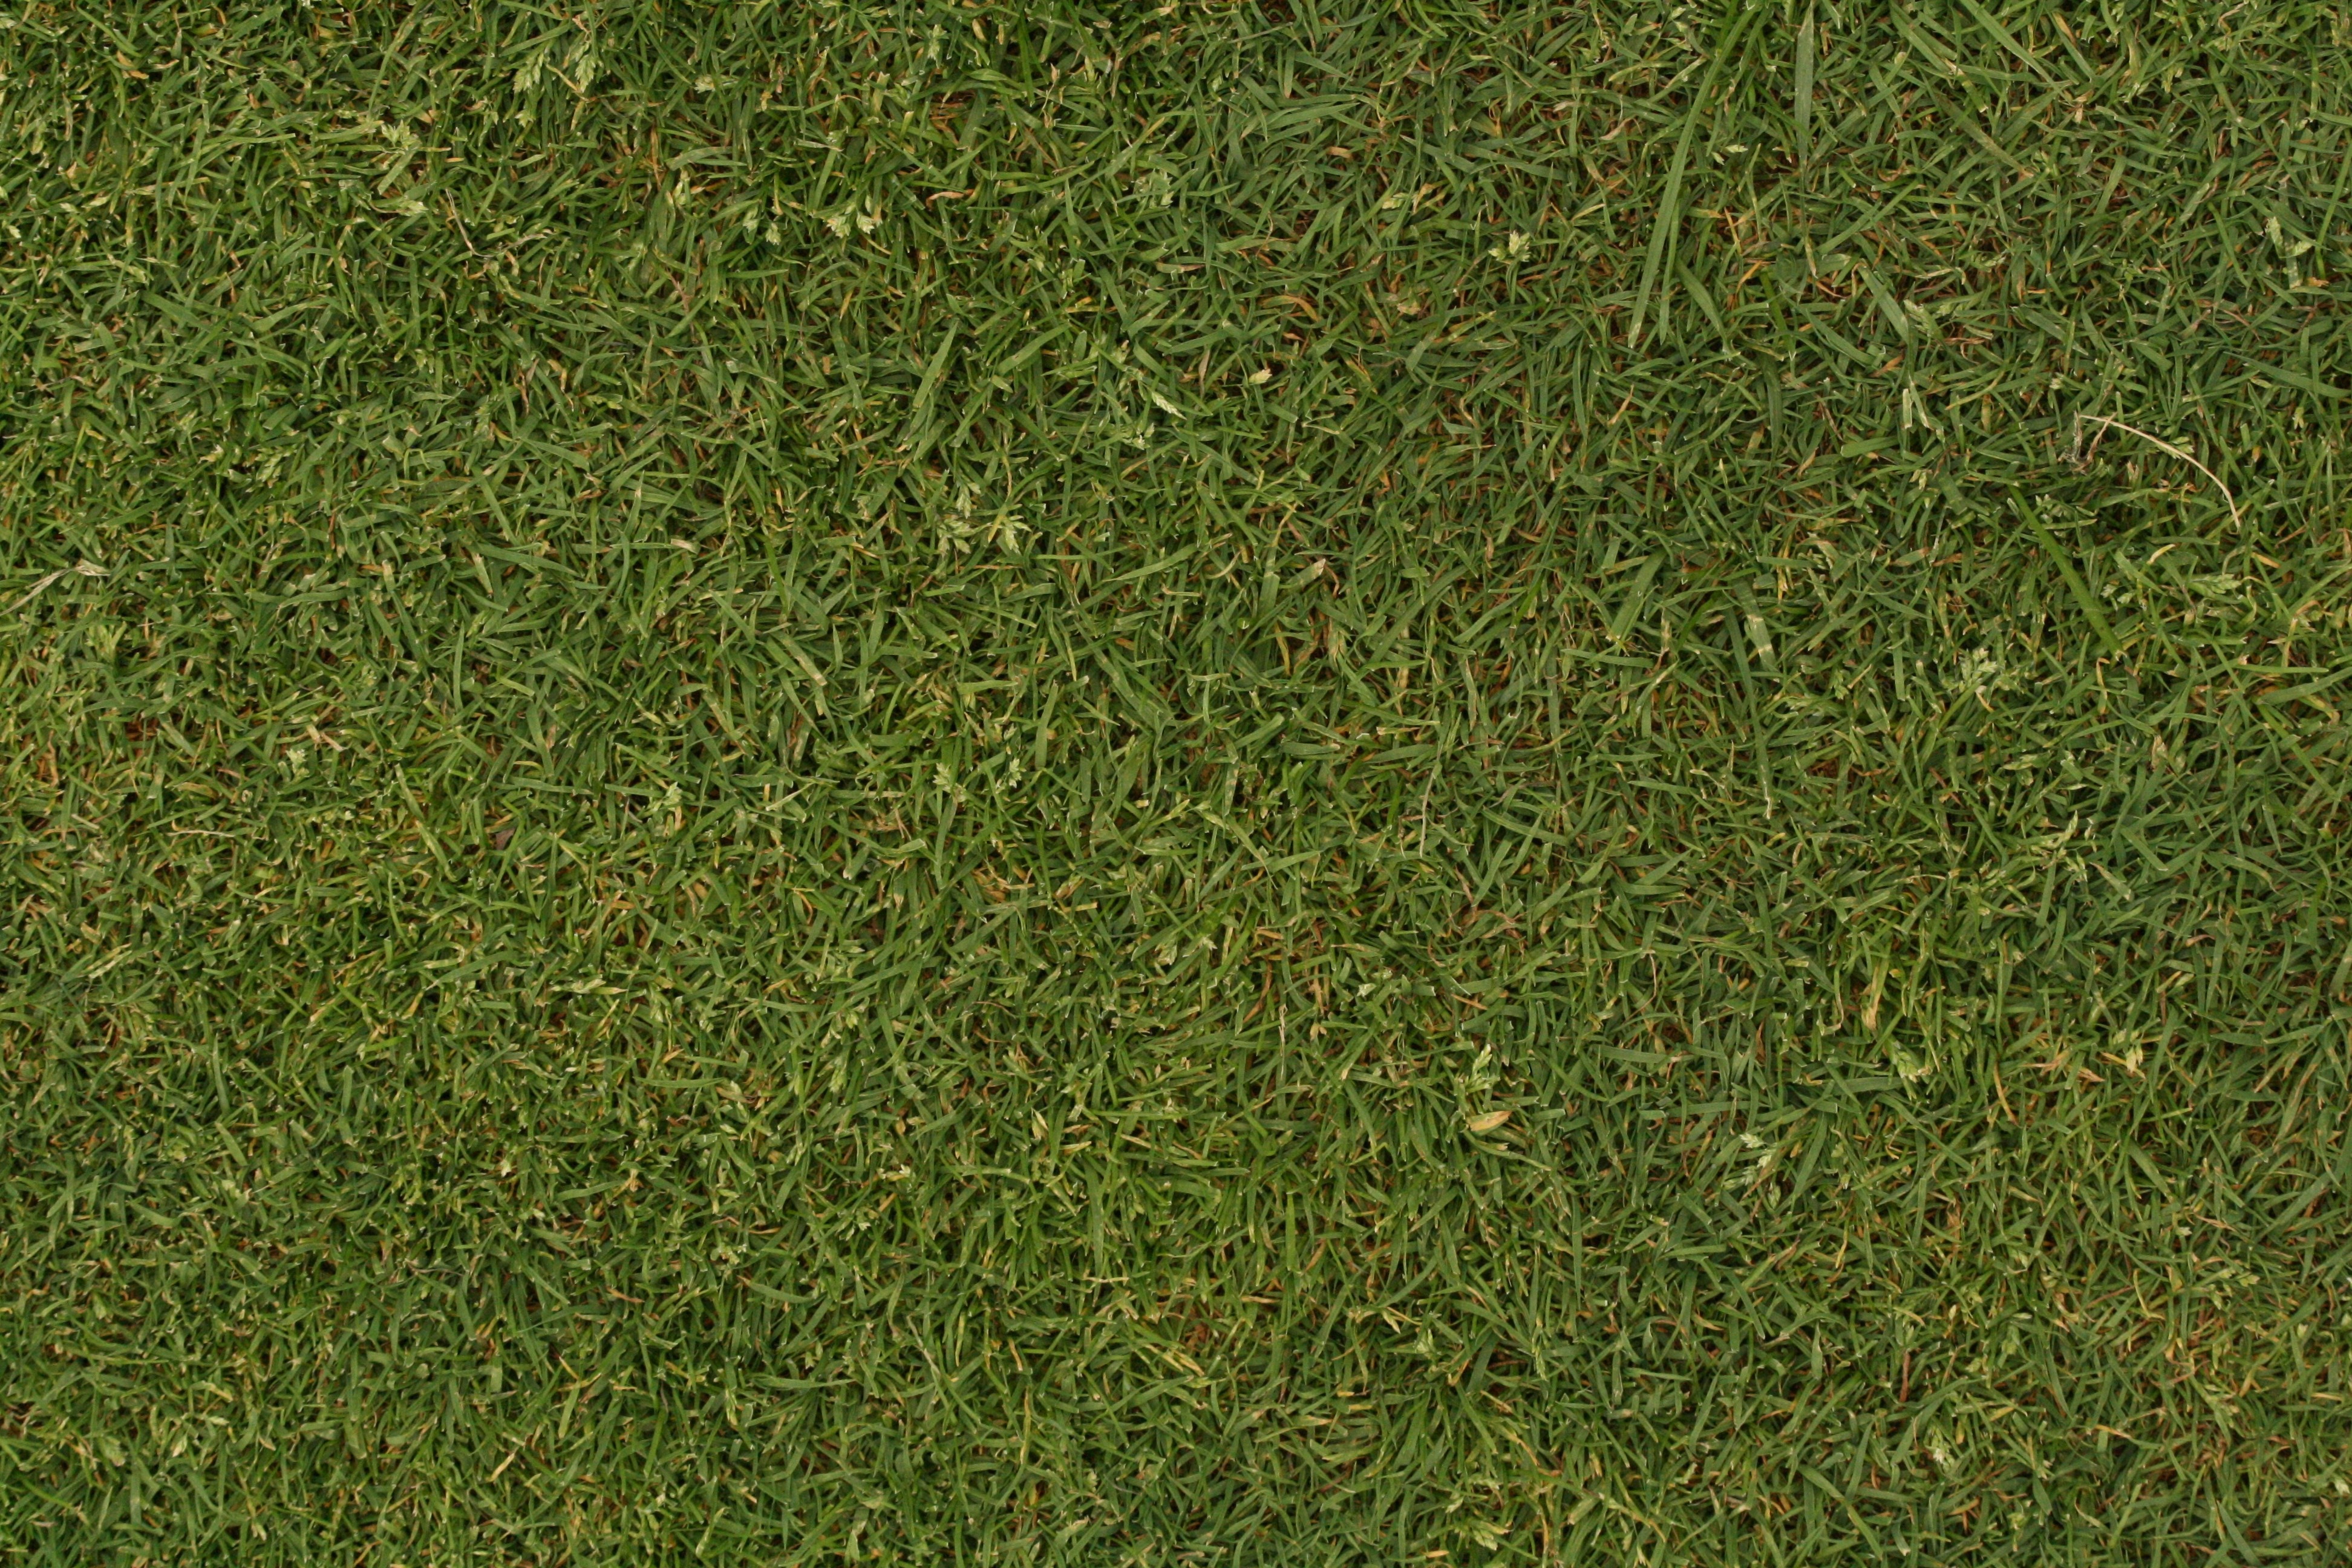 Free photo: Grass texture - Grass, Green, Lawn - Free Download - Jooinn